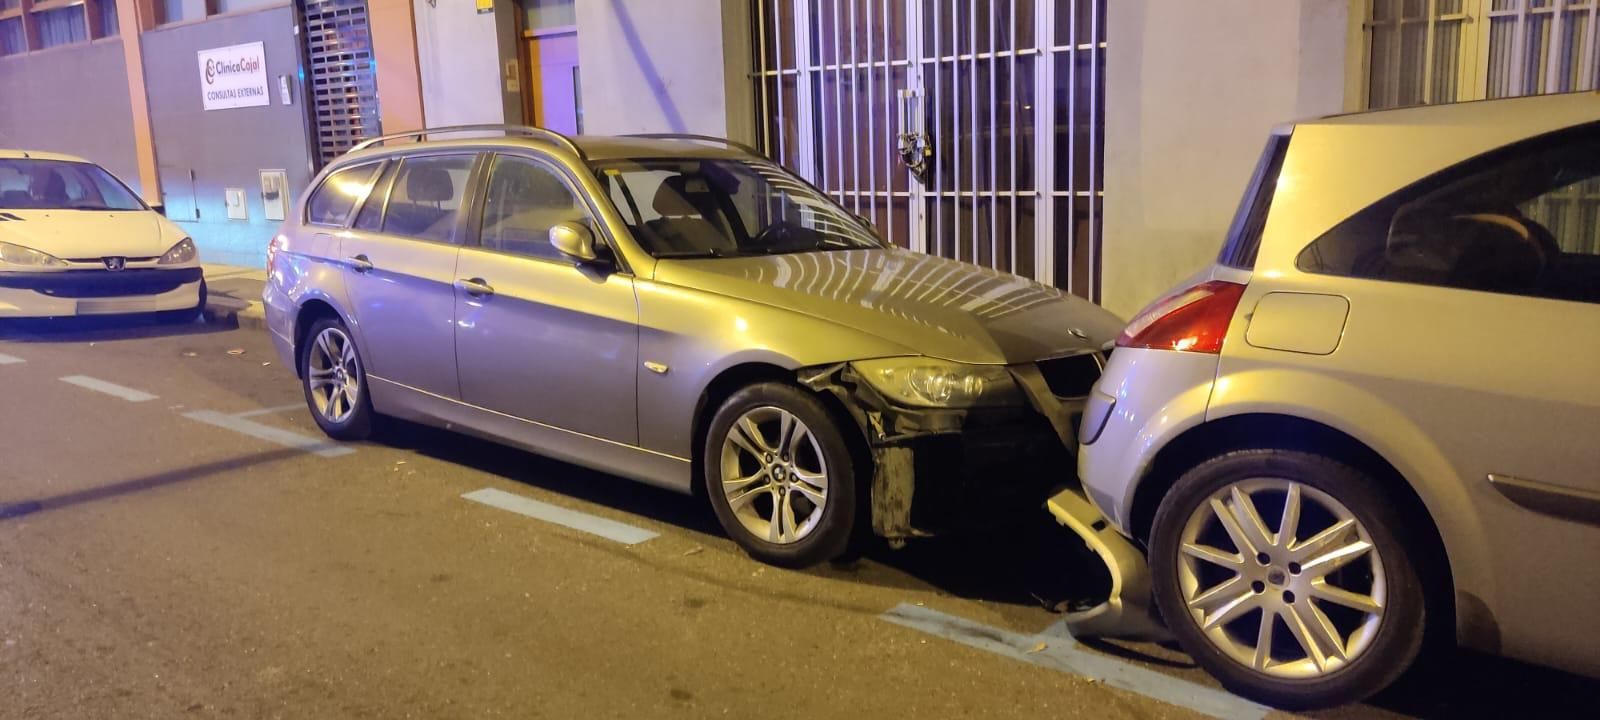 Una pareja para un coche que colisionó contra varios vehículos en Arenales